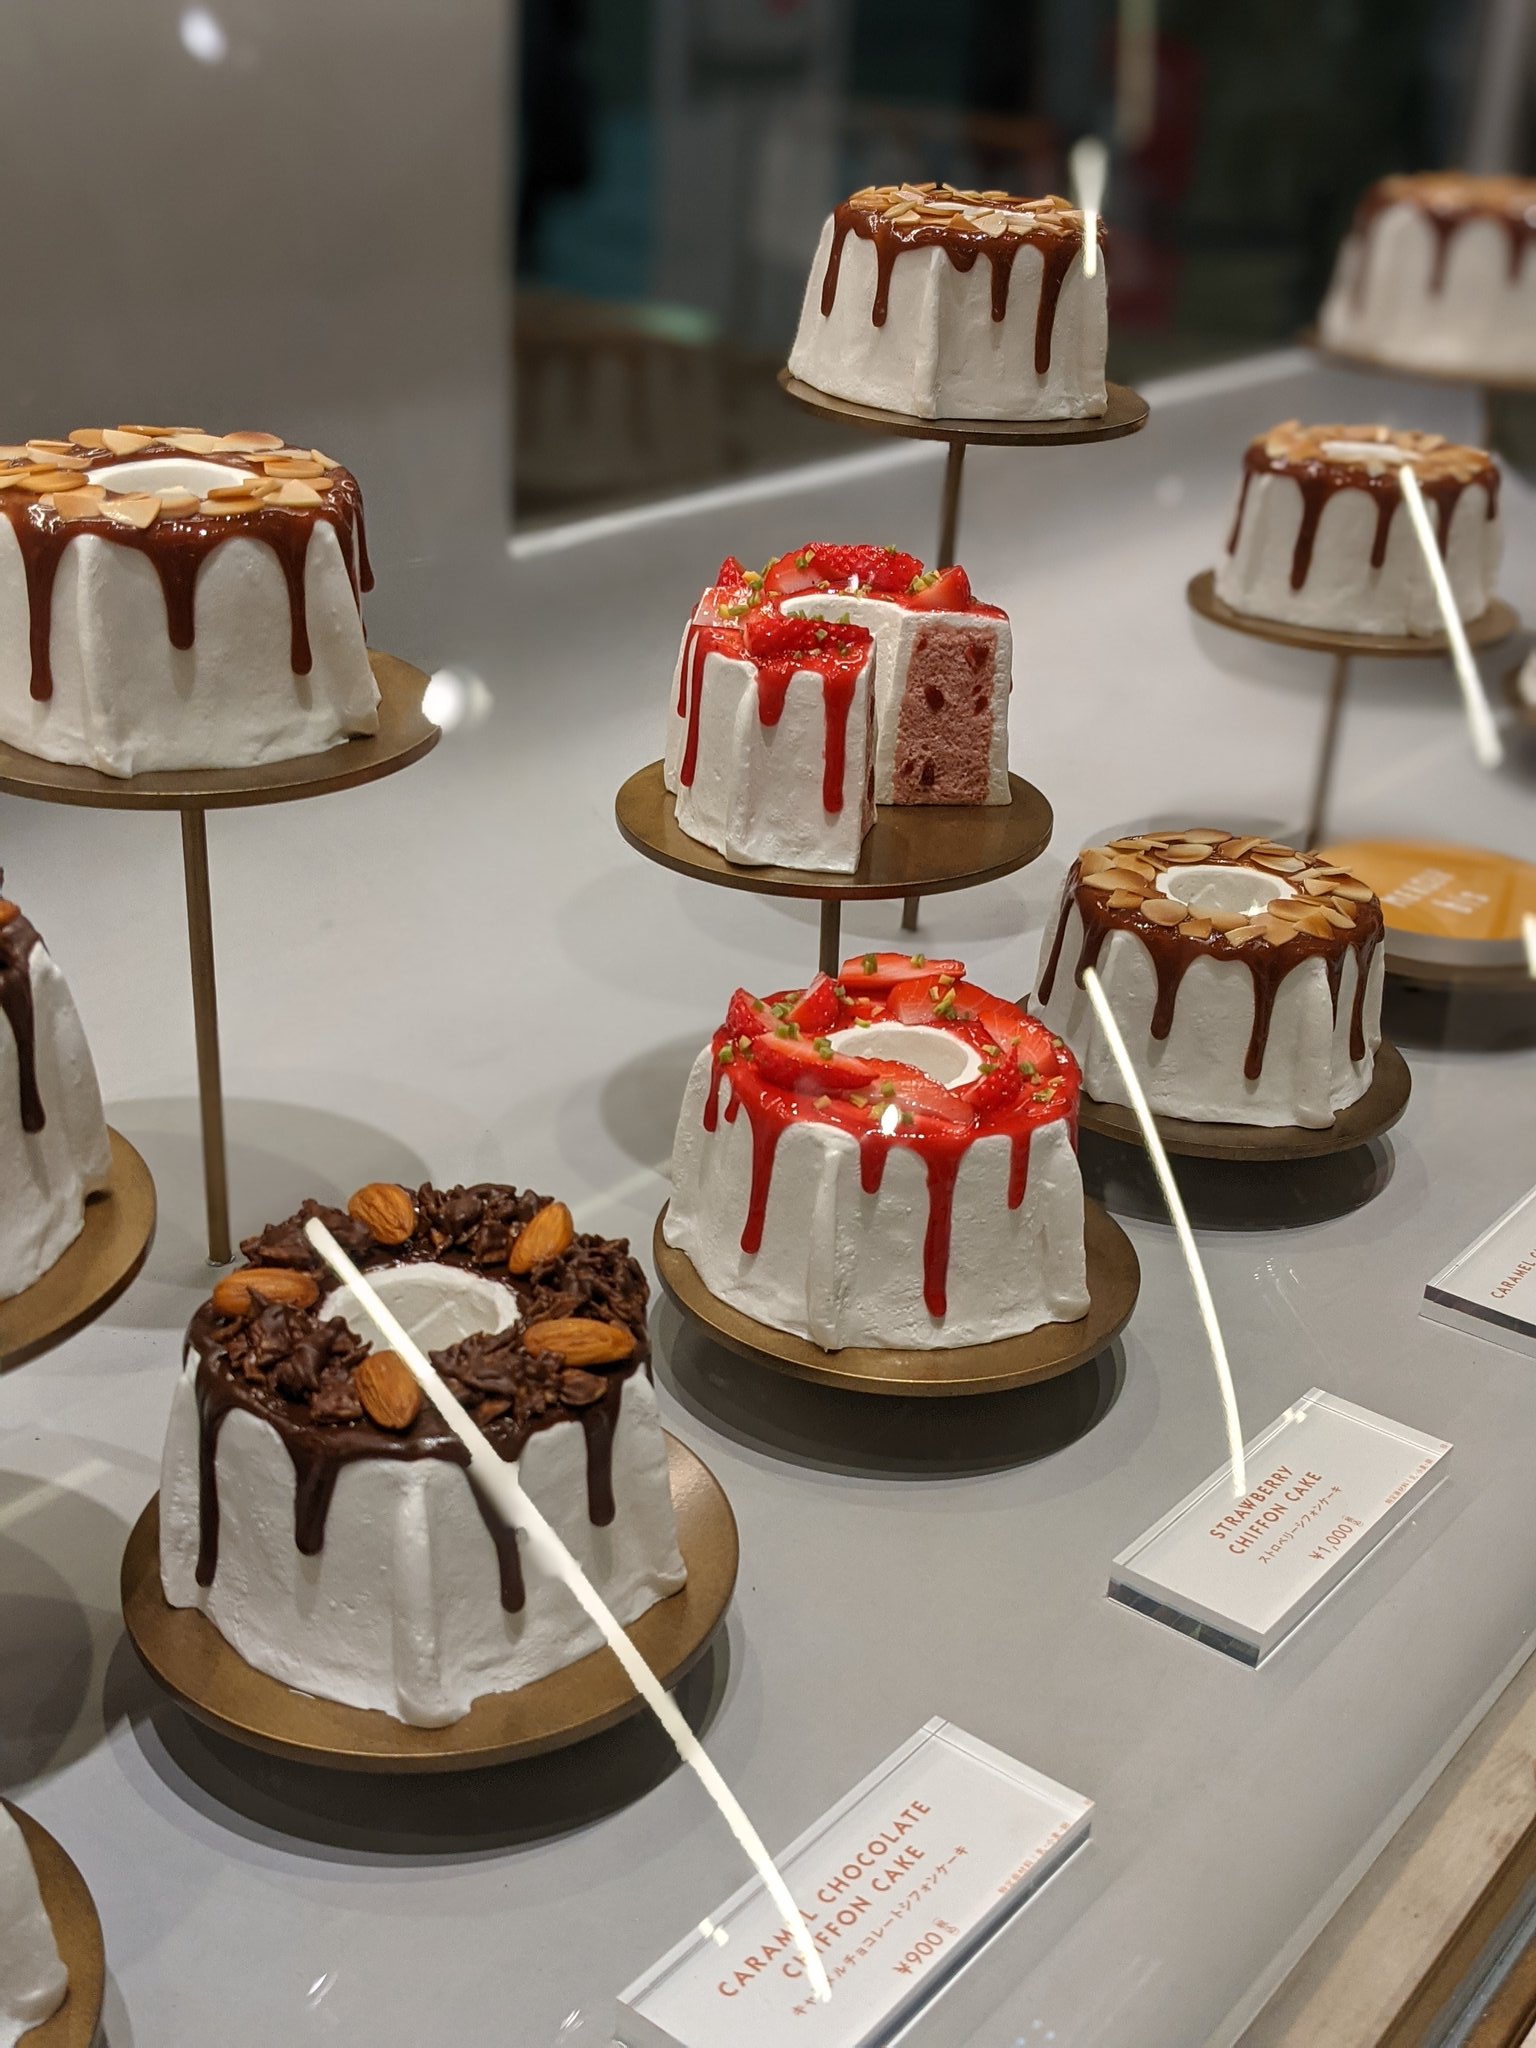 ゆうな 渋谷マークシティで最近熱いシフォンケーキ屋さん これはかわいい シフォンケーキなのに生菓子でサイズ感お土産としてよきすぎる 生キャラメルはギルティ Mercerbis T Co Kasrm4tmma Twitter